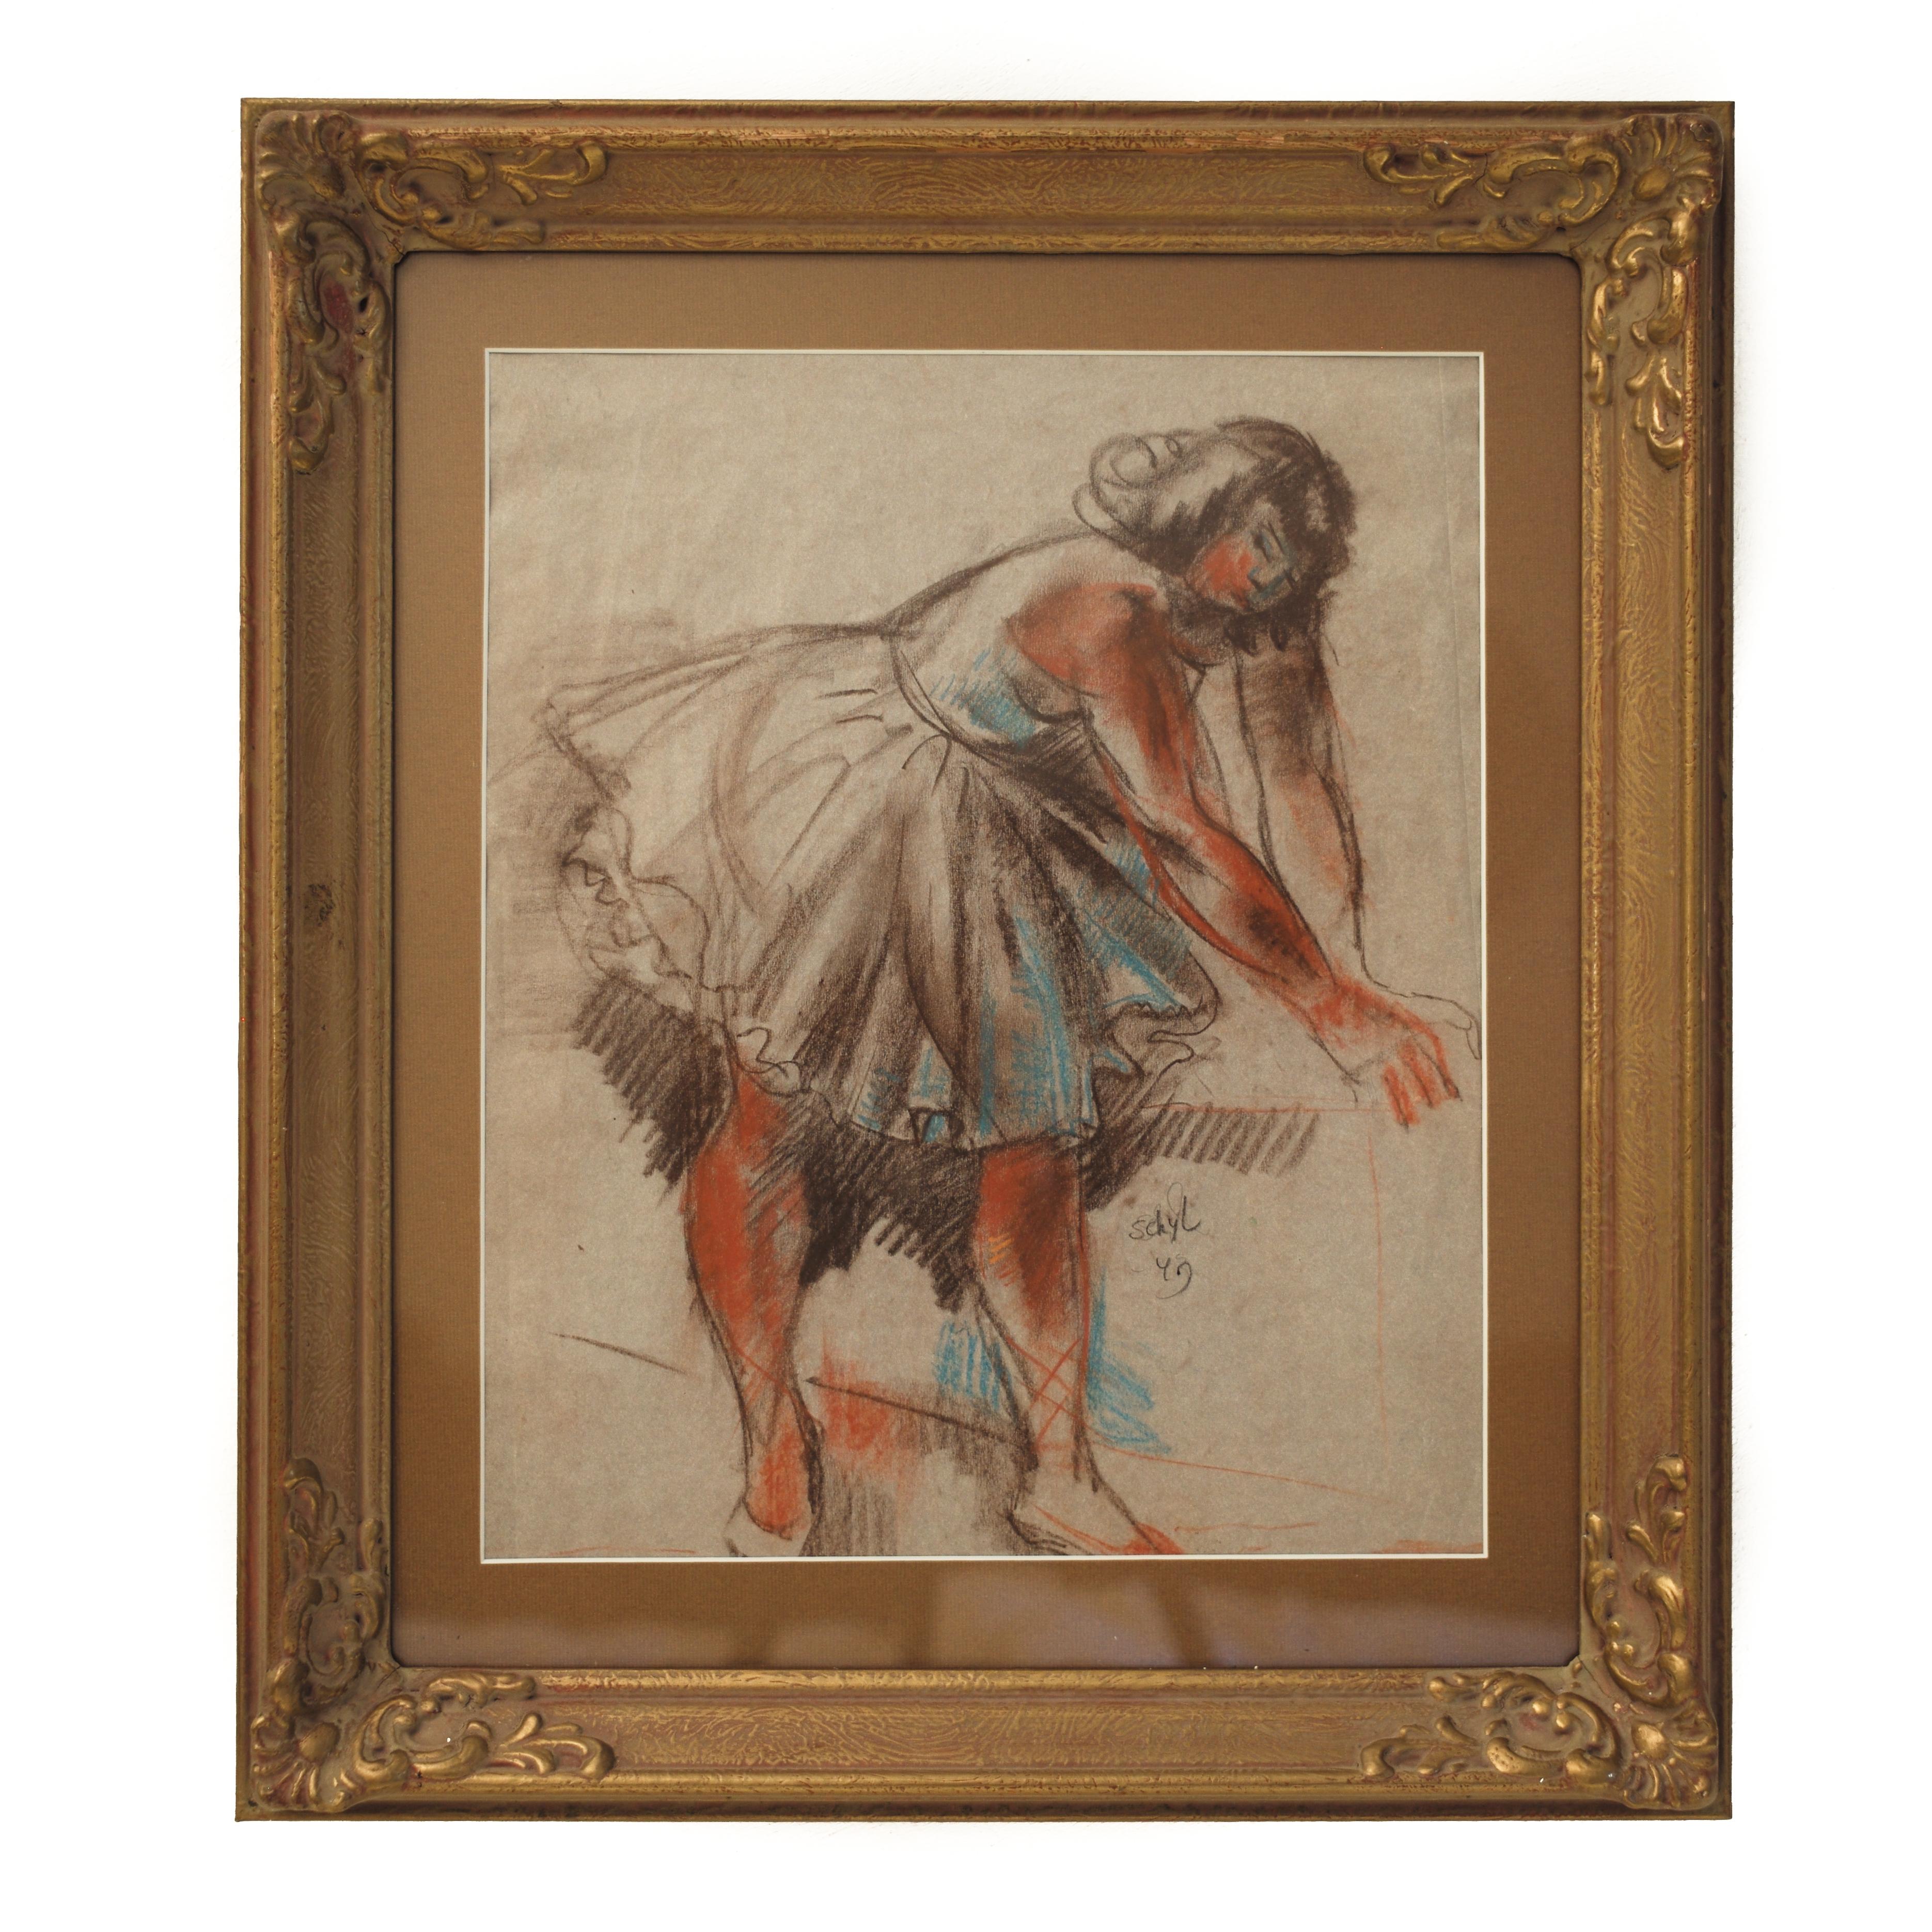 Jules Schyl (Schweden, 1893-1977)
Titel: Ballett-Tänzerinnen

Das Gemälde einer Balletttänzerin ist ein seltener Fund für einen Künstler, der vor allem für seine kubistische und expressionistische Malerei bekannt ist.  Das aktuelle Gemälde hat viele